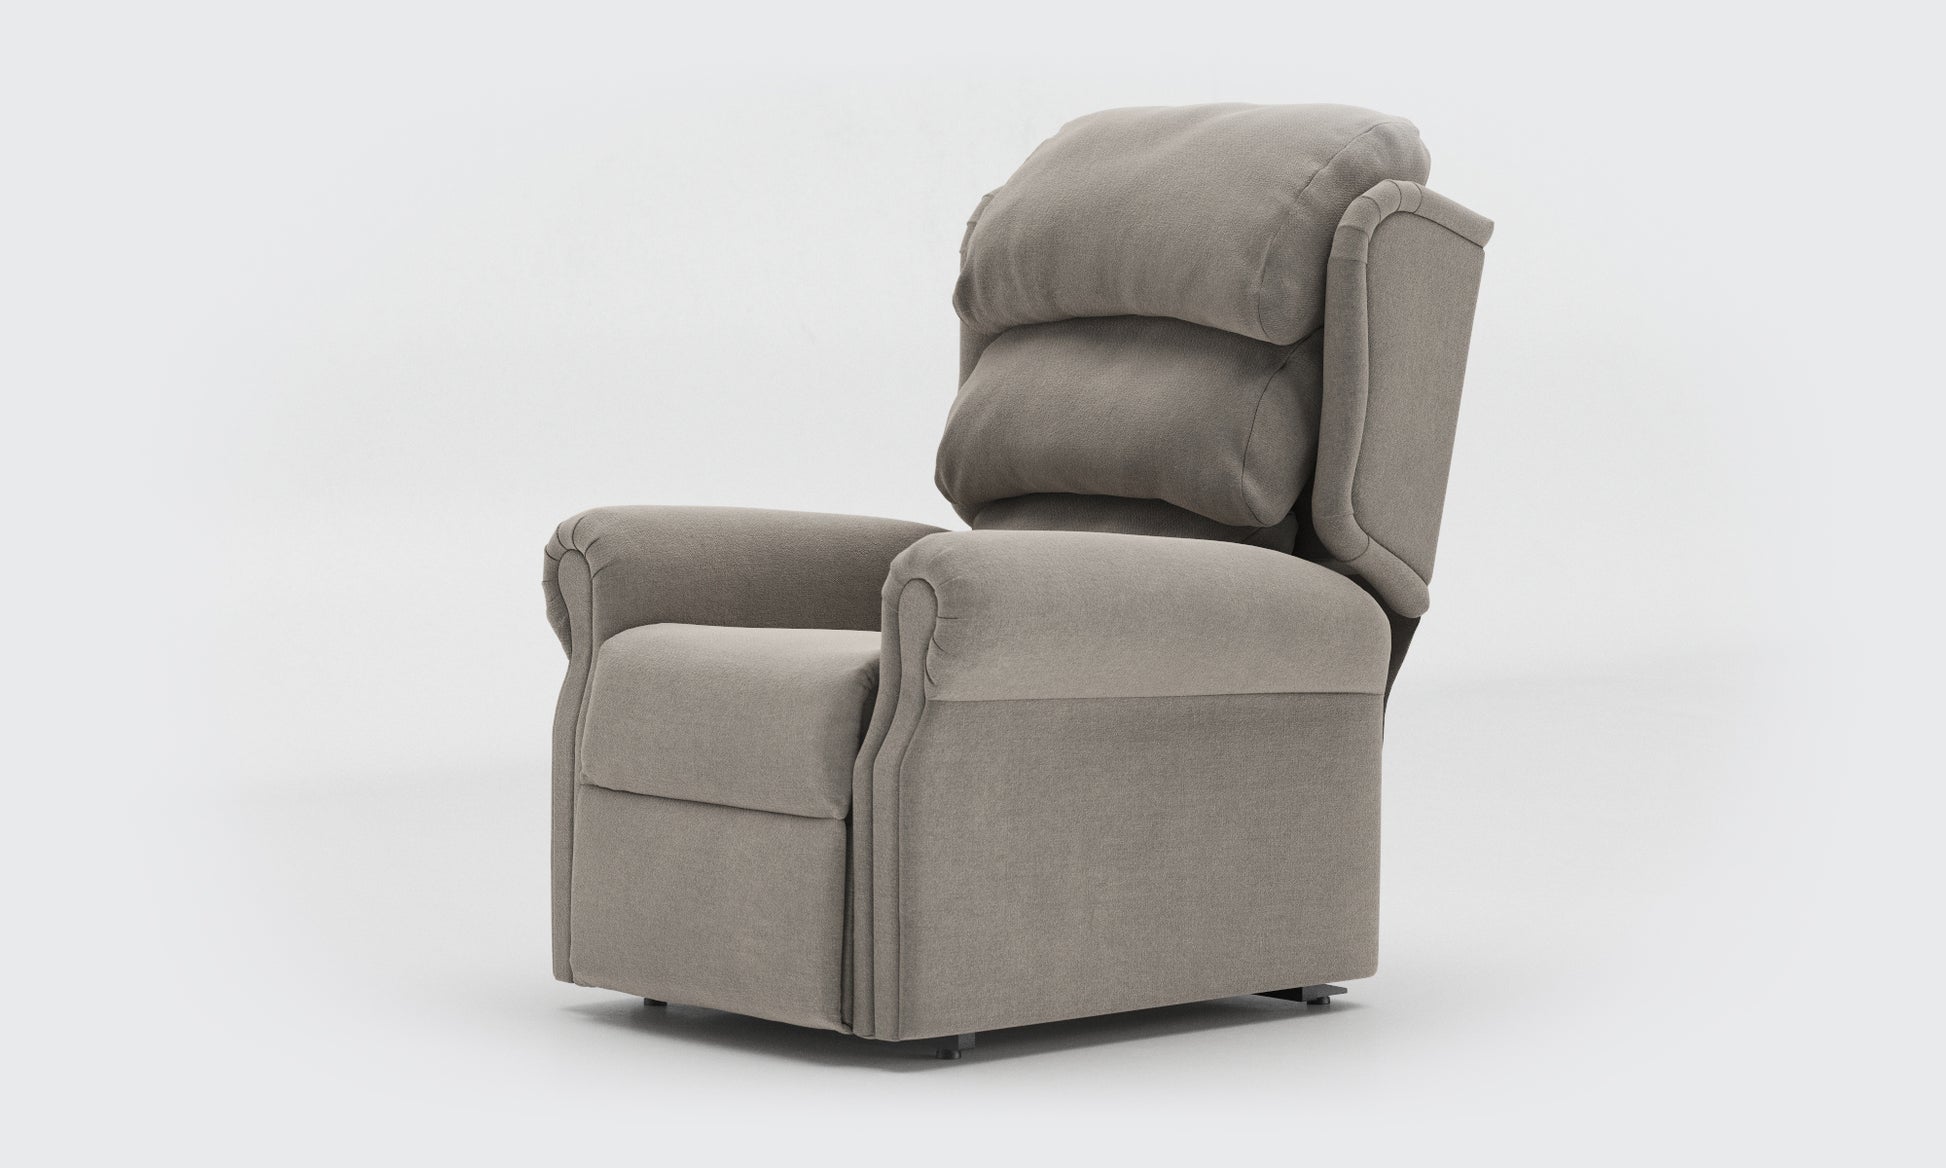 Adara Riser Recliner Chair standard waterfall Fabric Zinc